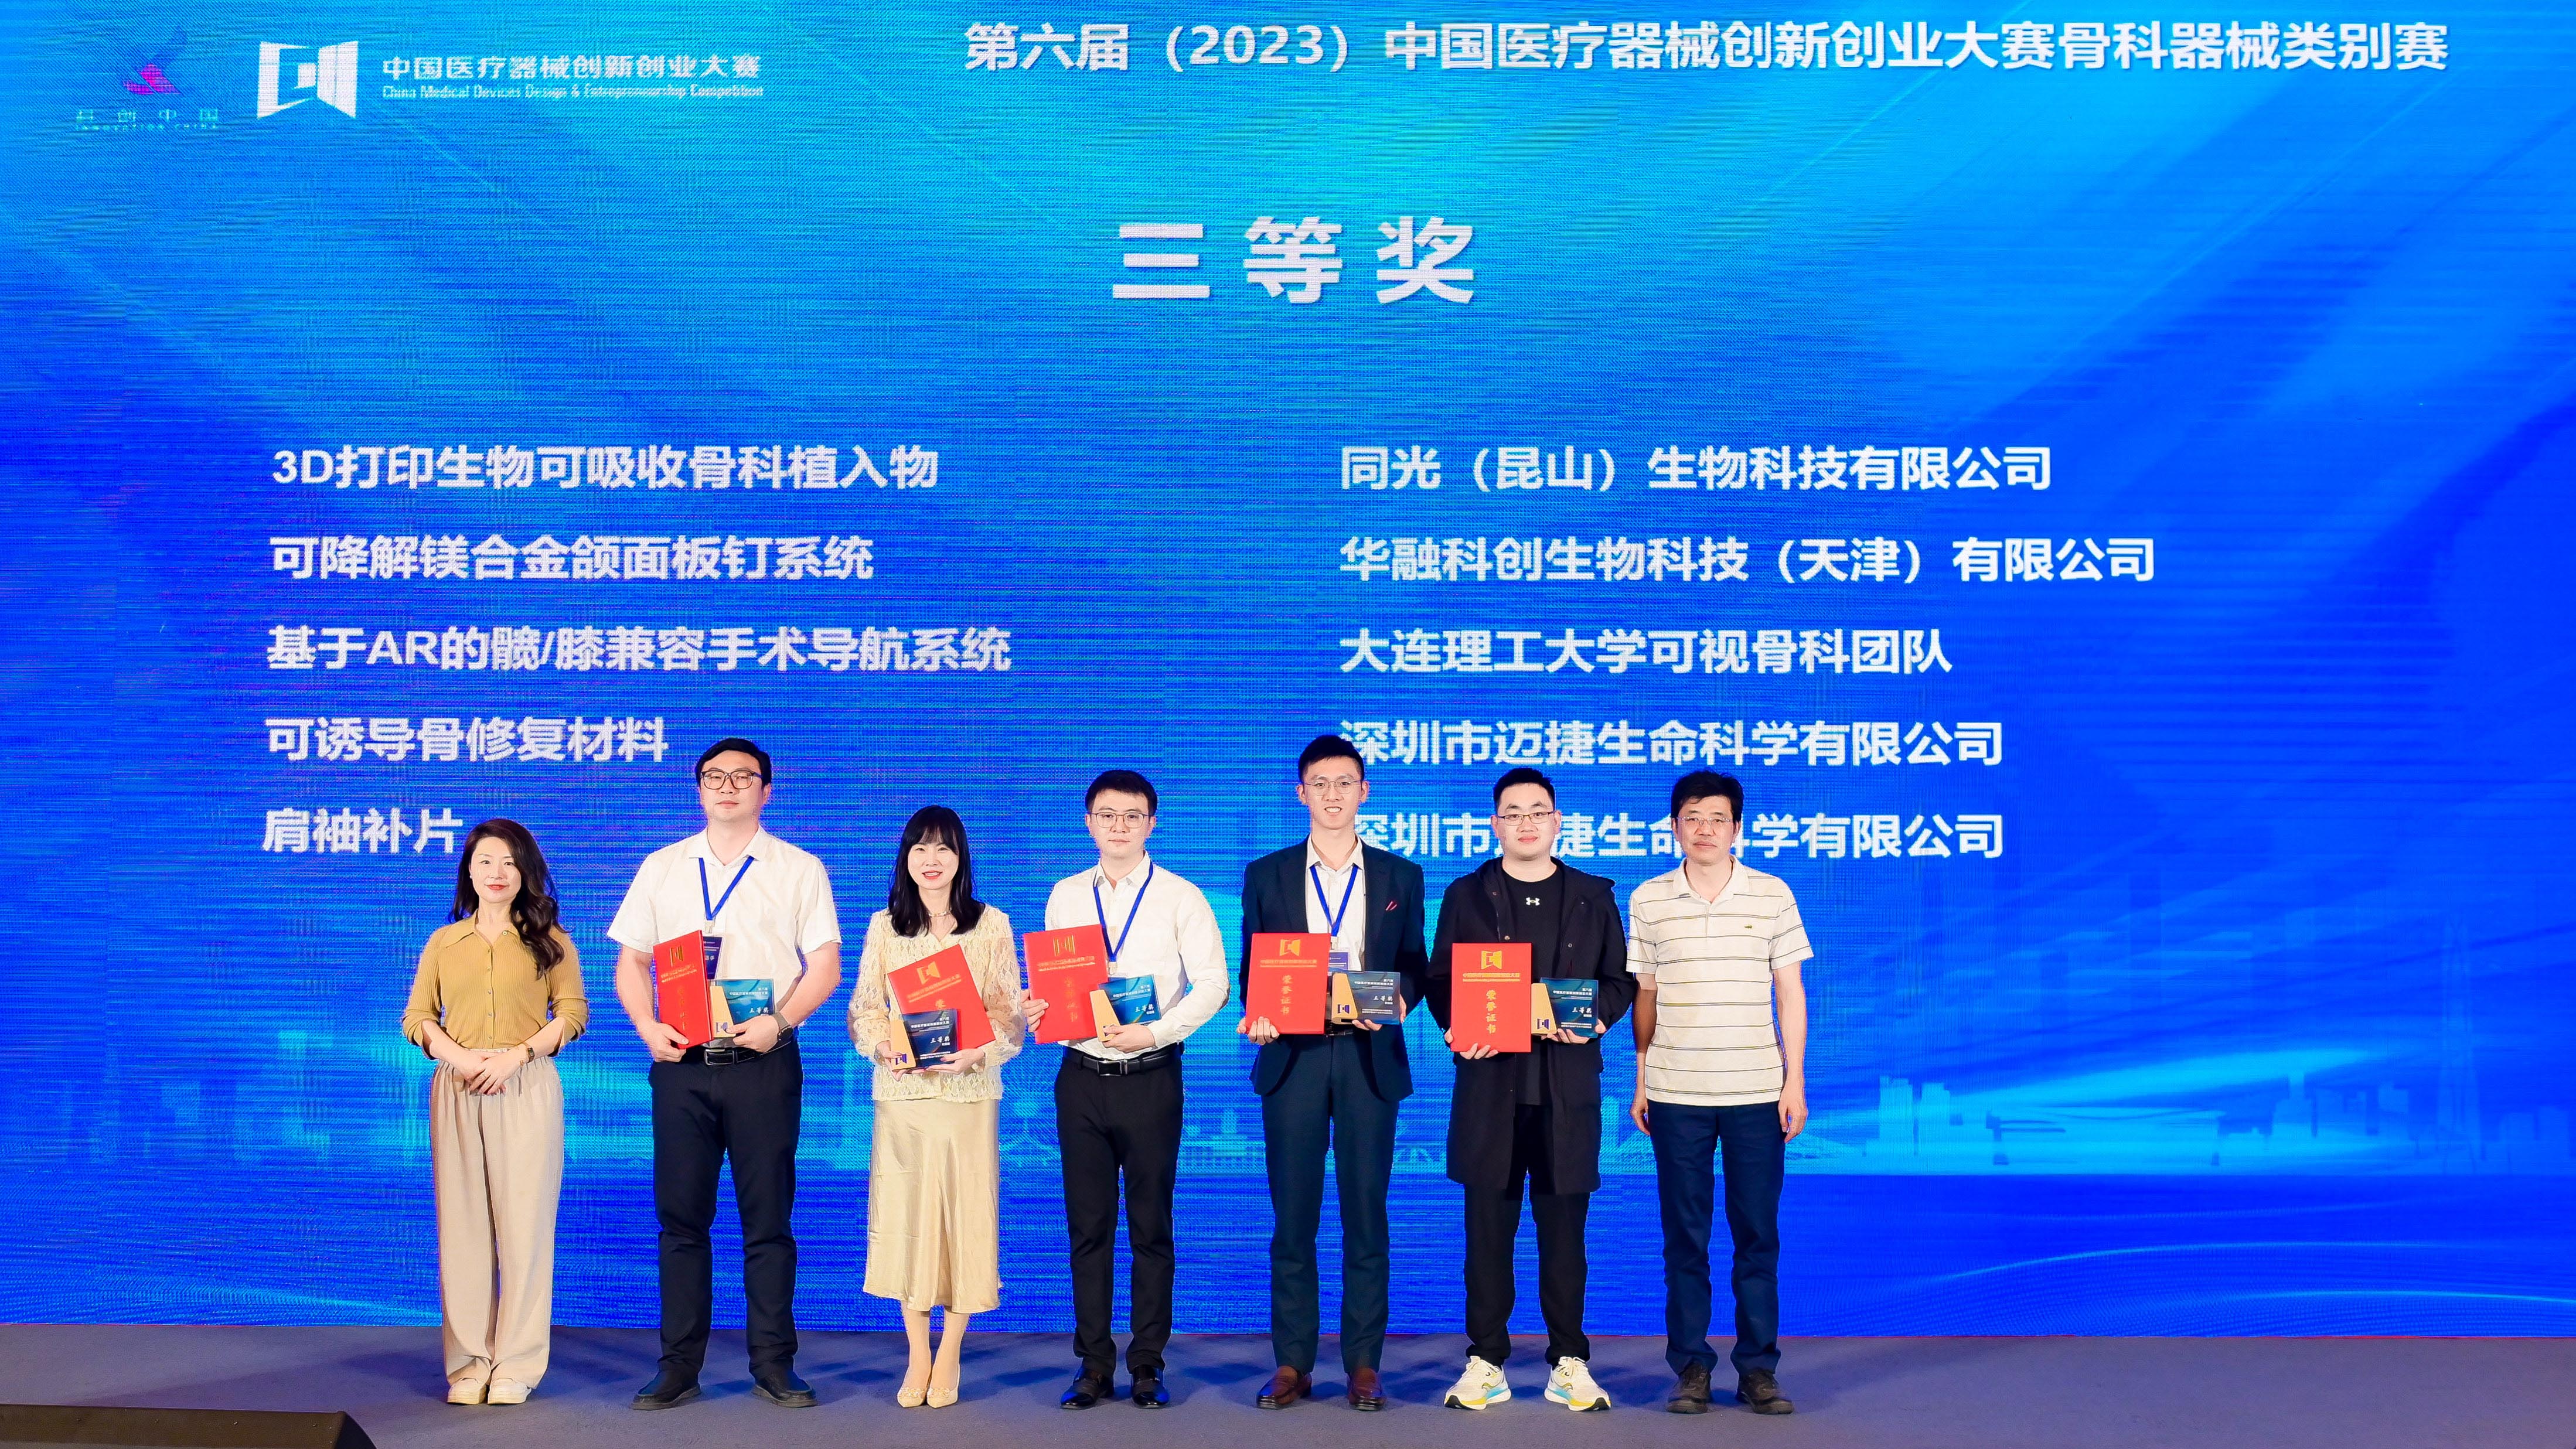 同光生物荣获第六届中国医疗器械创新创业大赛三等奖